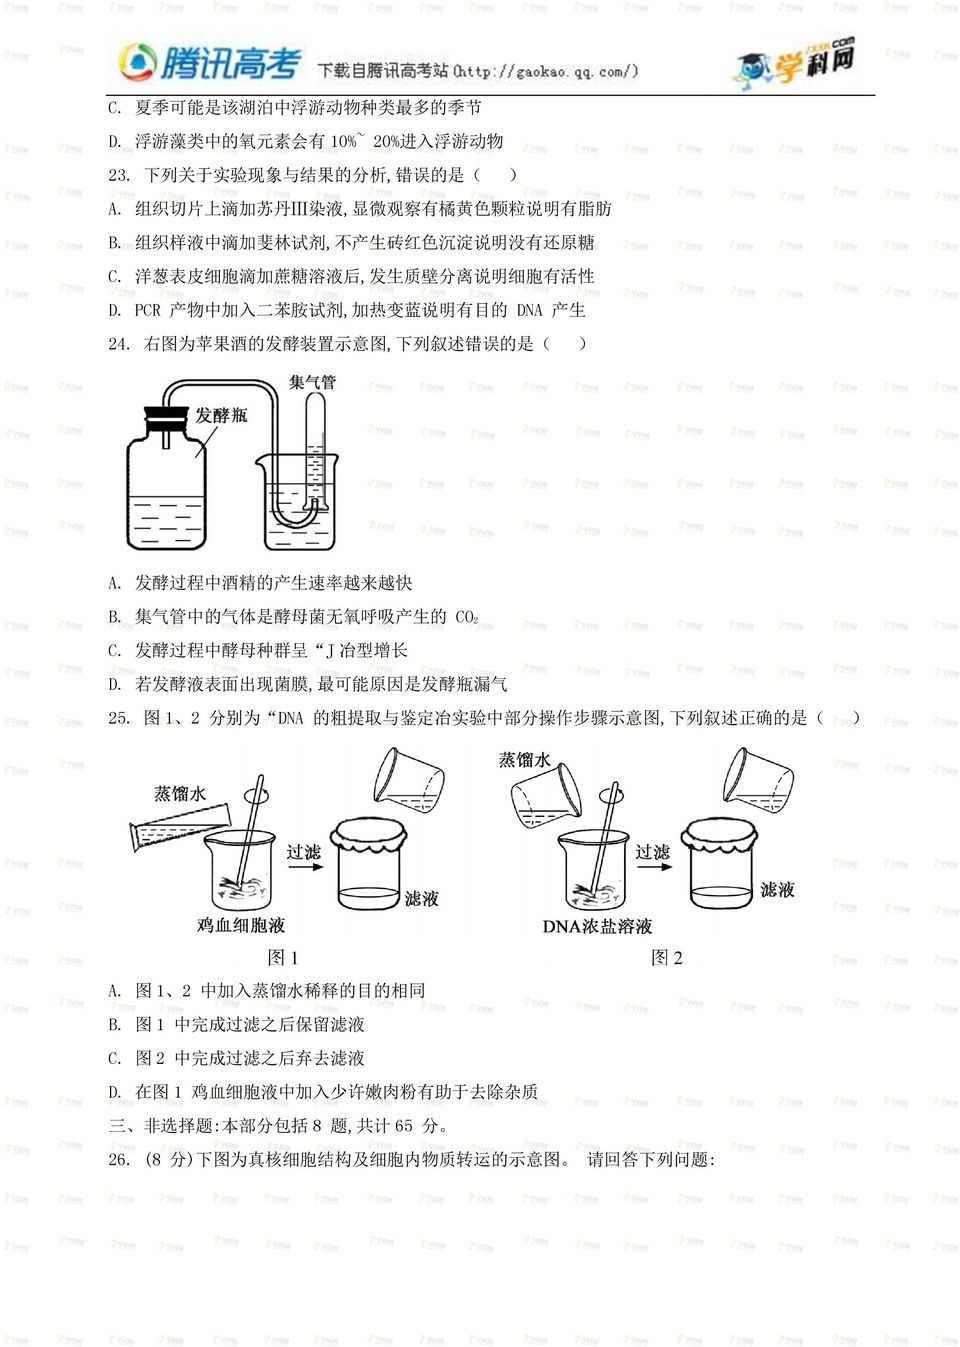 右 图 为 苹 果 酒 的 发 酵 装 置 示 意 图, 下 列 叙 述 错 误 的 是 ( ) A. 发 酵 过 程 中 酒 精 的 产 生 速 率 越 来 越 快 B. 集 气 管 中 的 气 体 是 酵 母 菌 无 氧 呼 吸 产 生 的 CO2 C. 发 酵 过 程 中 酵 母 种 群 呈 J 冶 型 增 长 D.